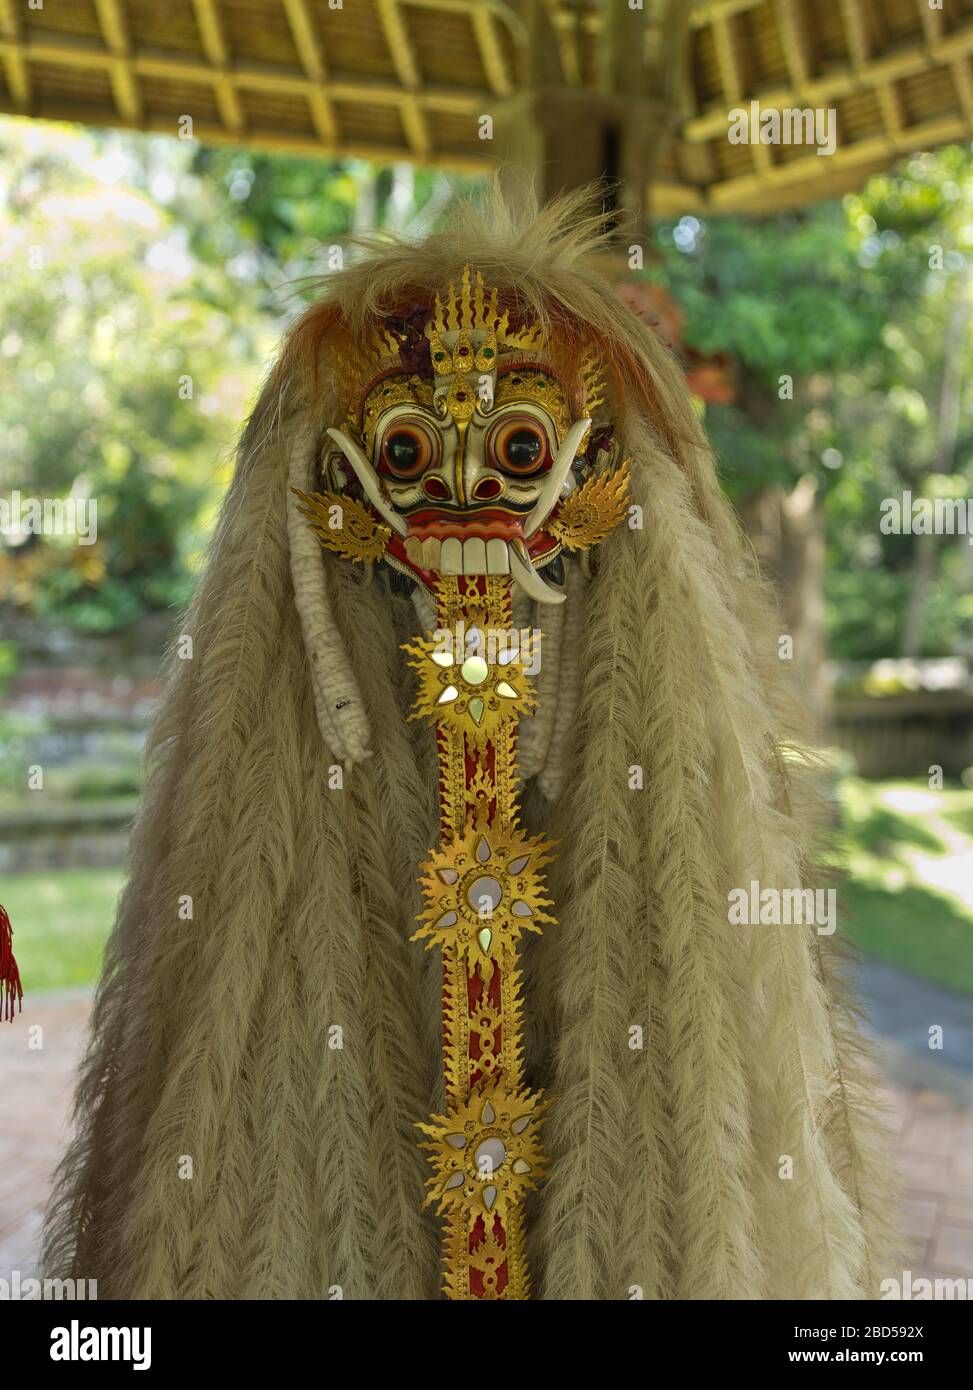 dh Pura Taman Ayun Royal Temple BALI INDONESIA Balinese Hindu Mengwi temples Rangda demon queen mask indonesian myth mythology Stock Photo